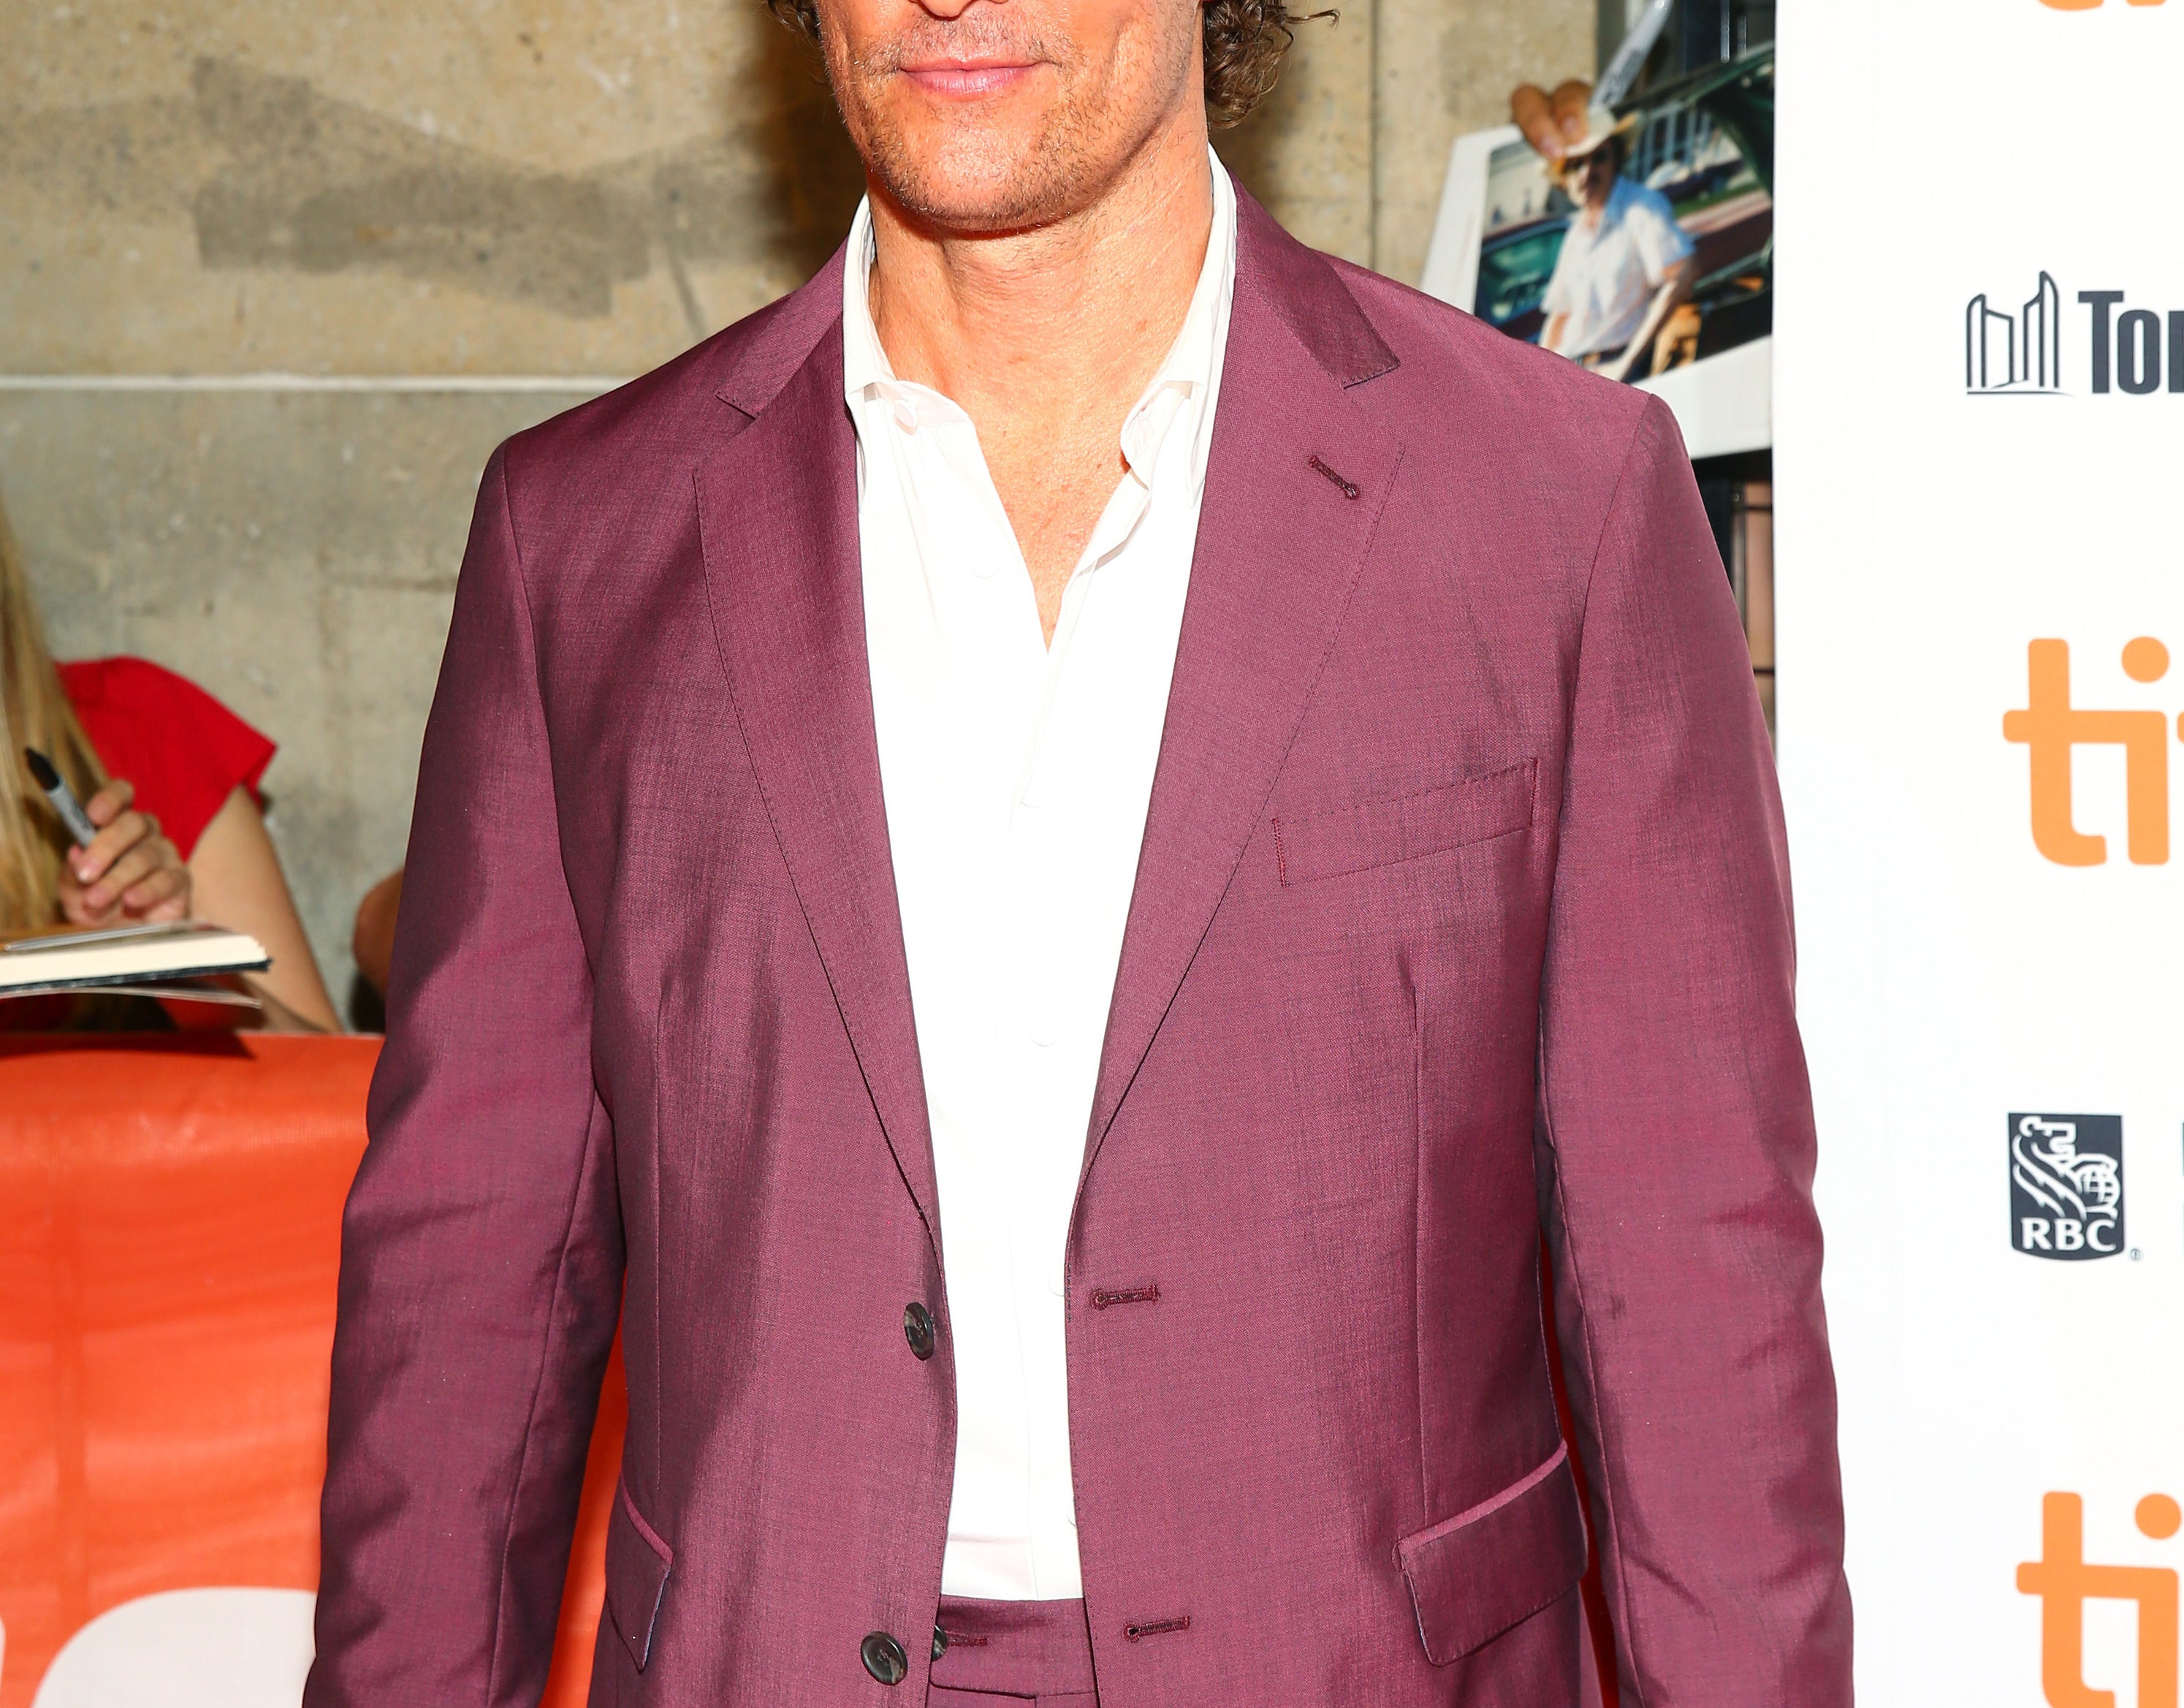 Matthew wears a maroon suit jacket to a film festival